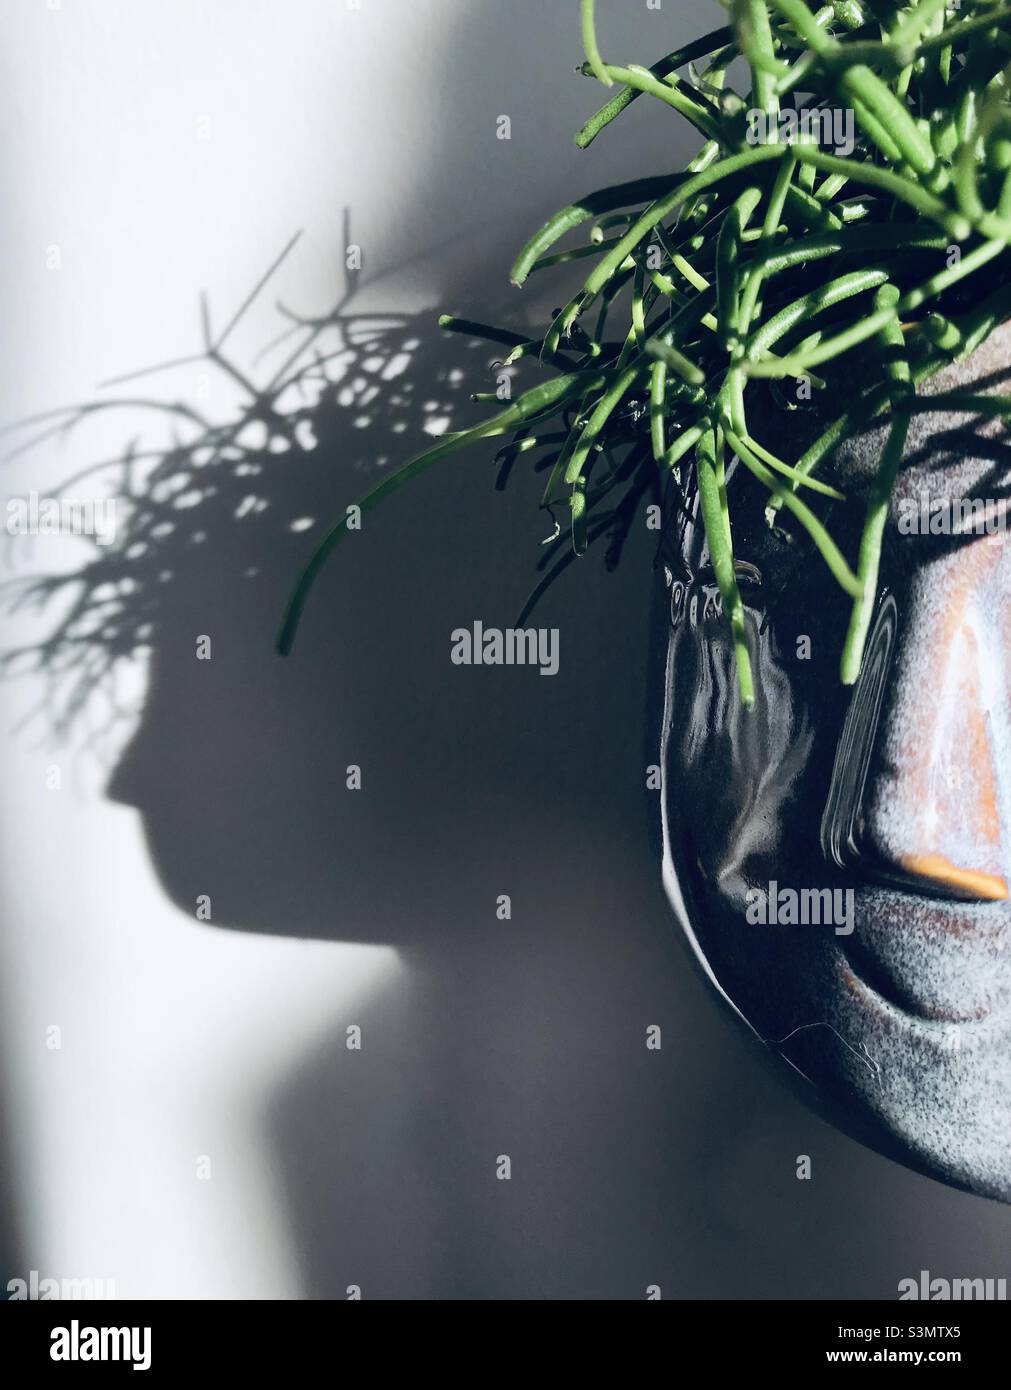 Happy Face Pflanztopf mit Mistelkaktus-Pflanze, um wie ein Kopf aus Haaren aussehen, und es ist Schatten Stockfoto